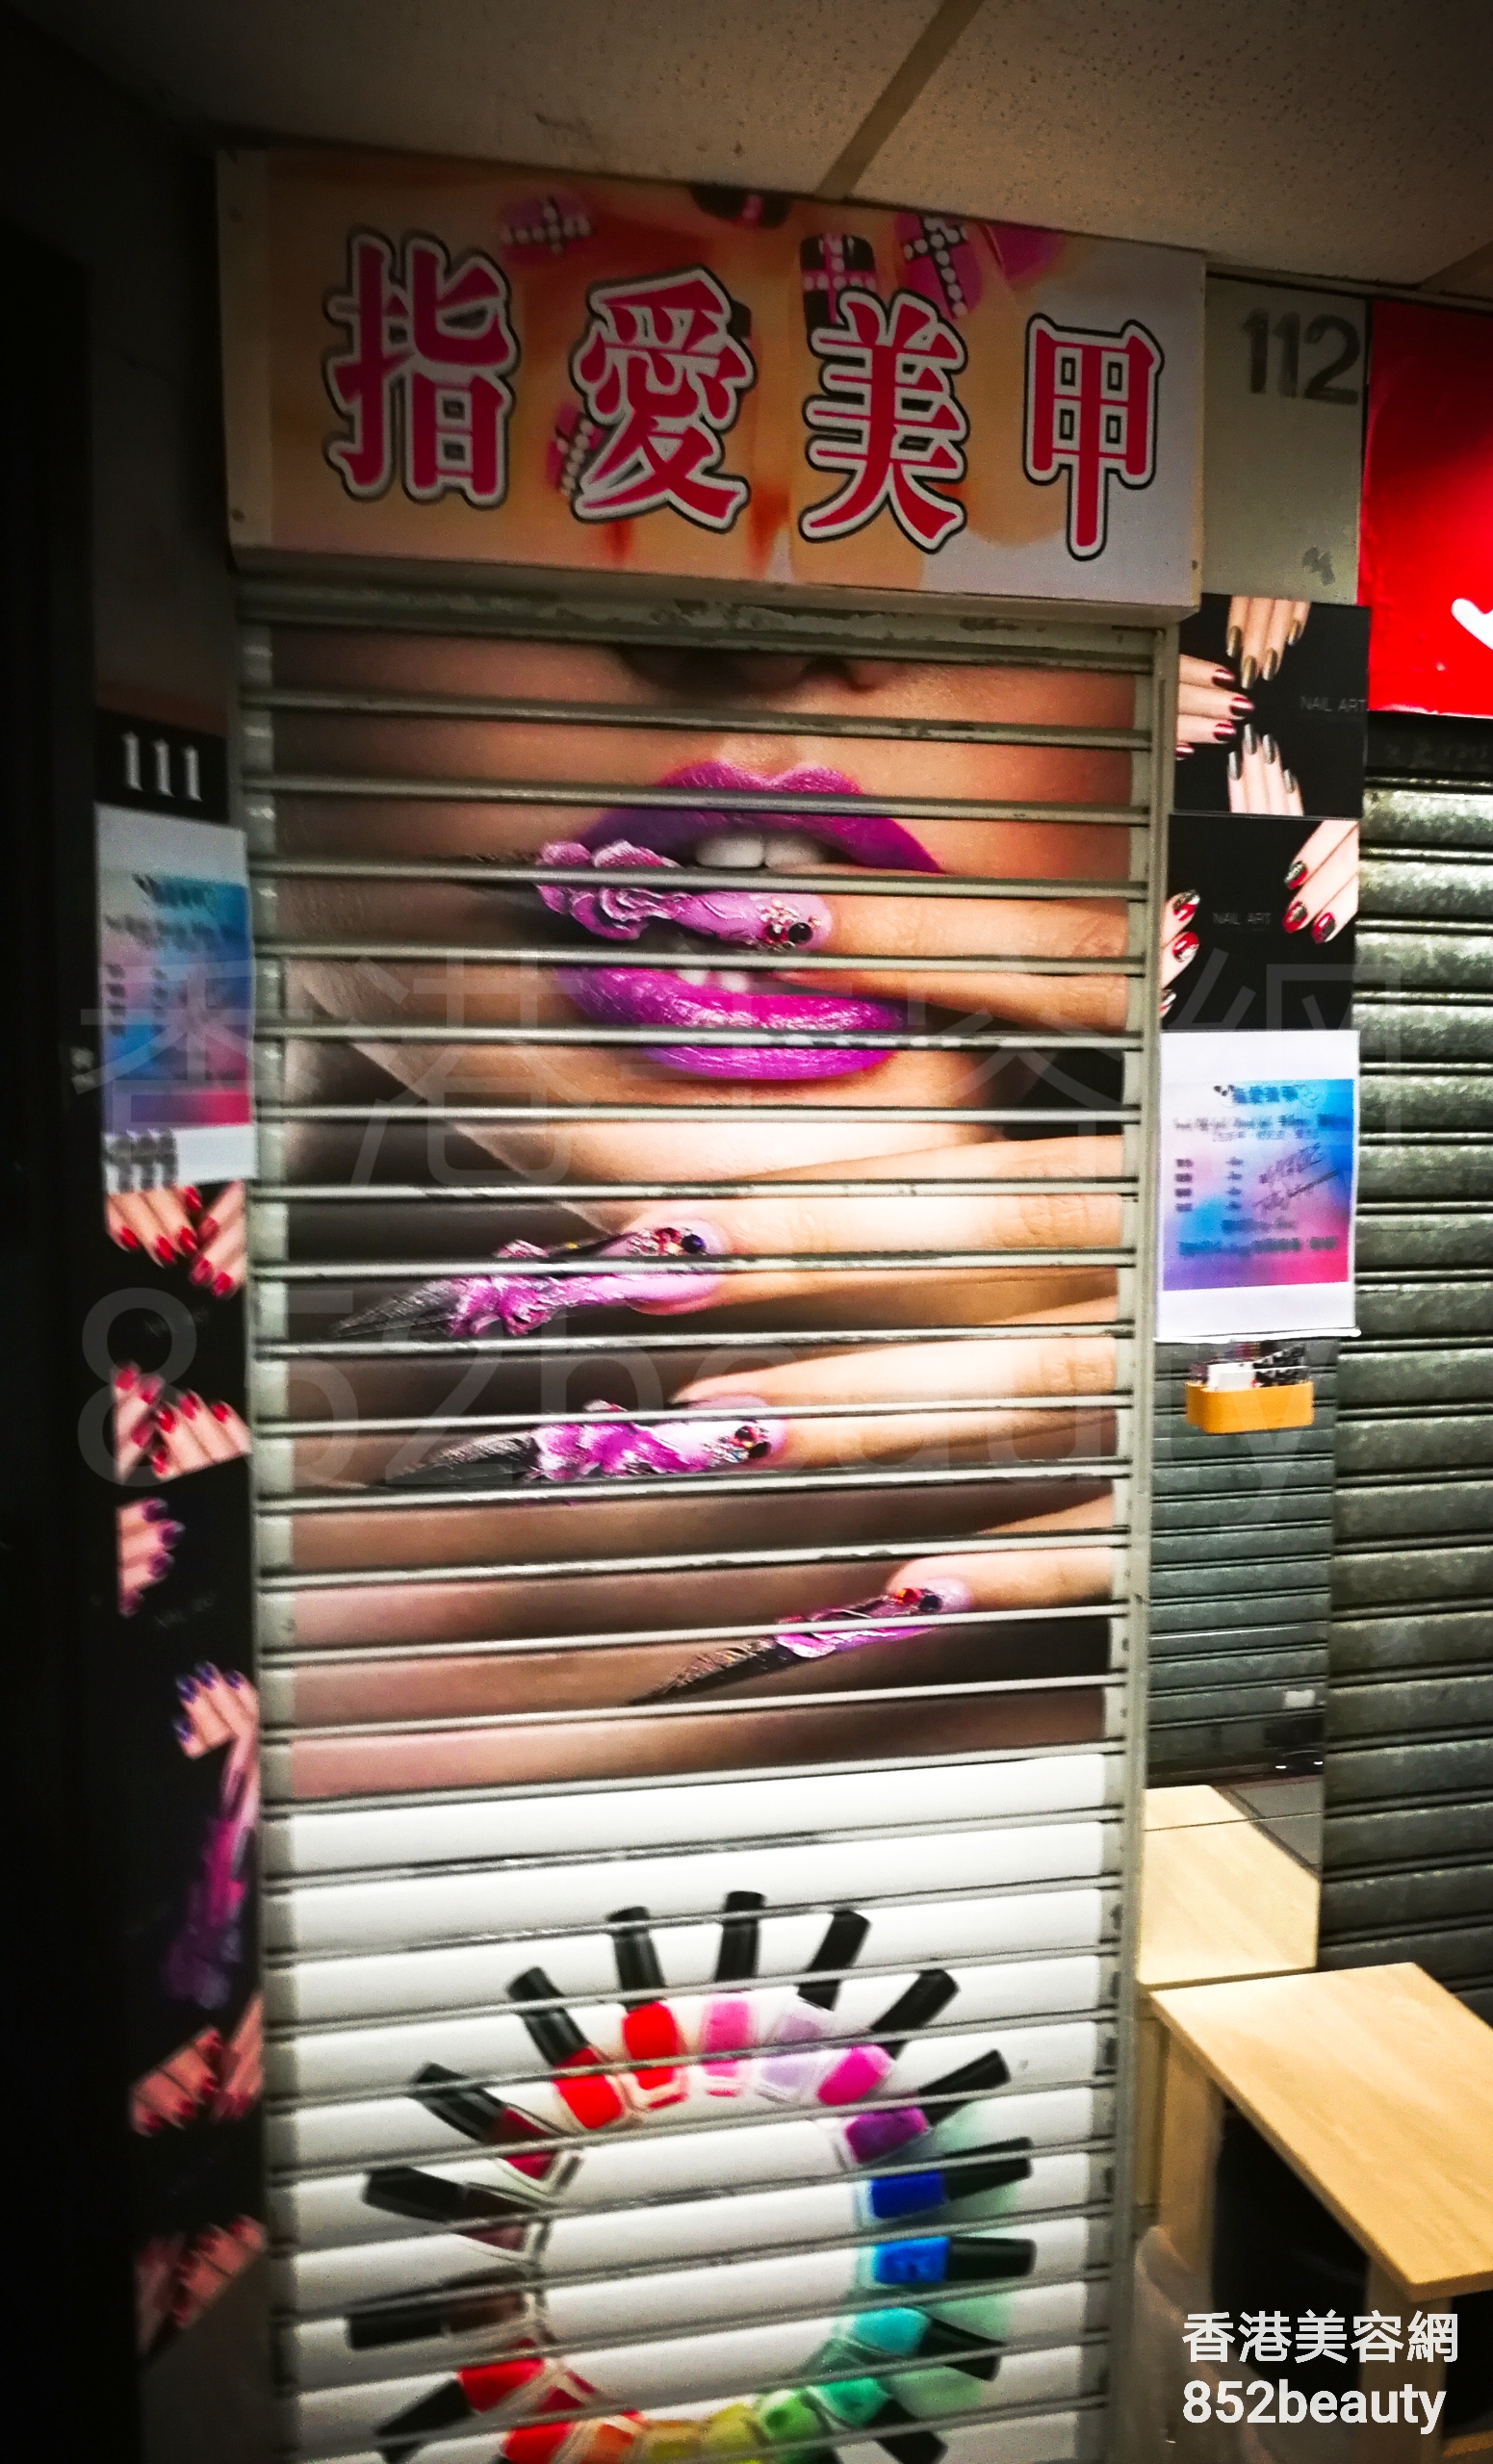 香港美容網 Hong Kong Beauty Salon 美容院 / 美容師: 指愛美甲